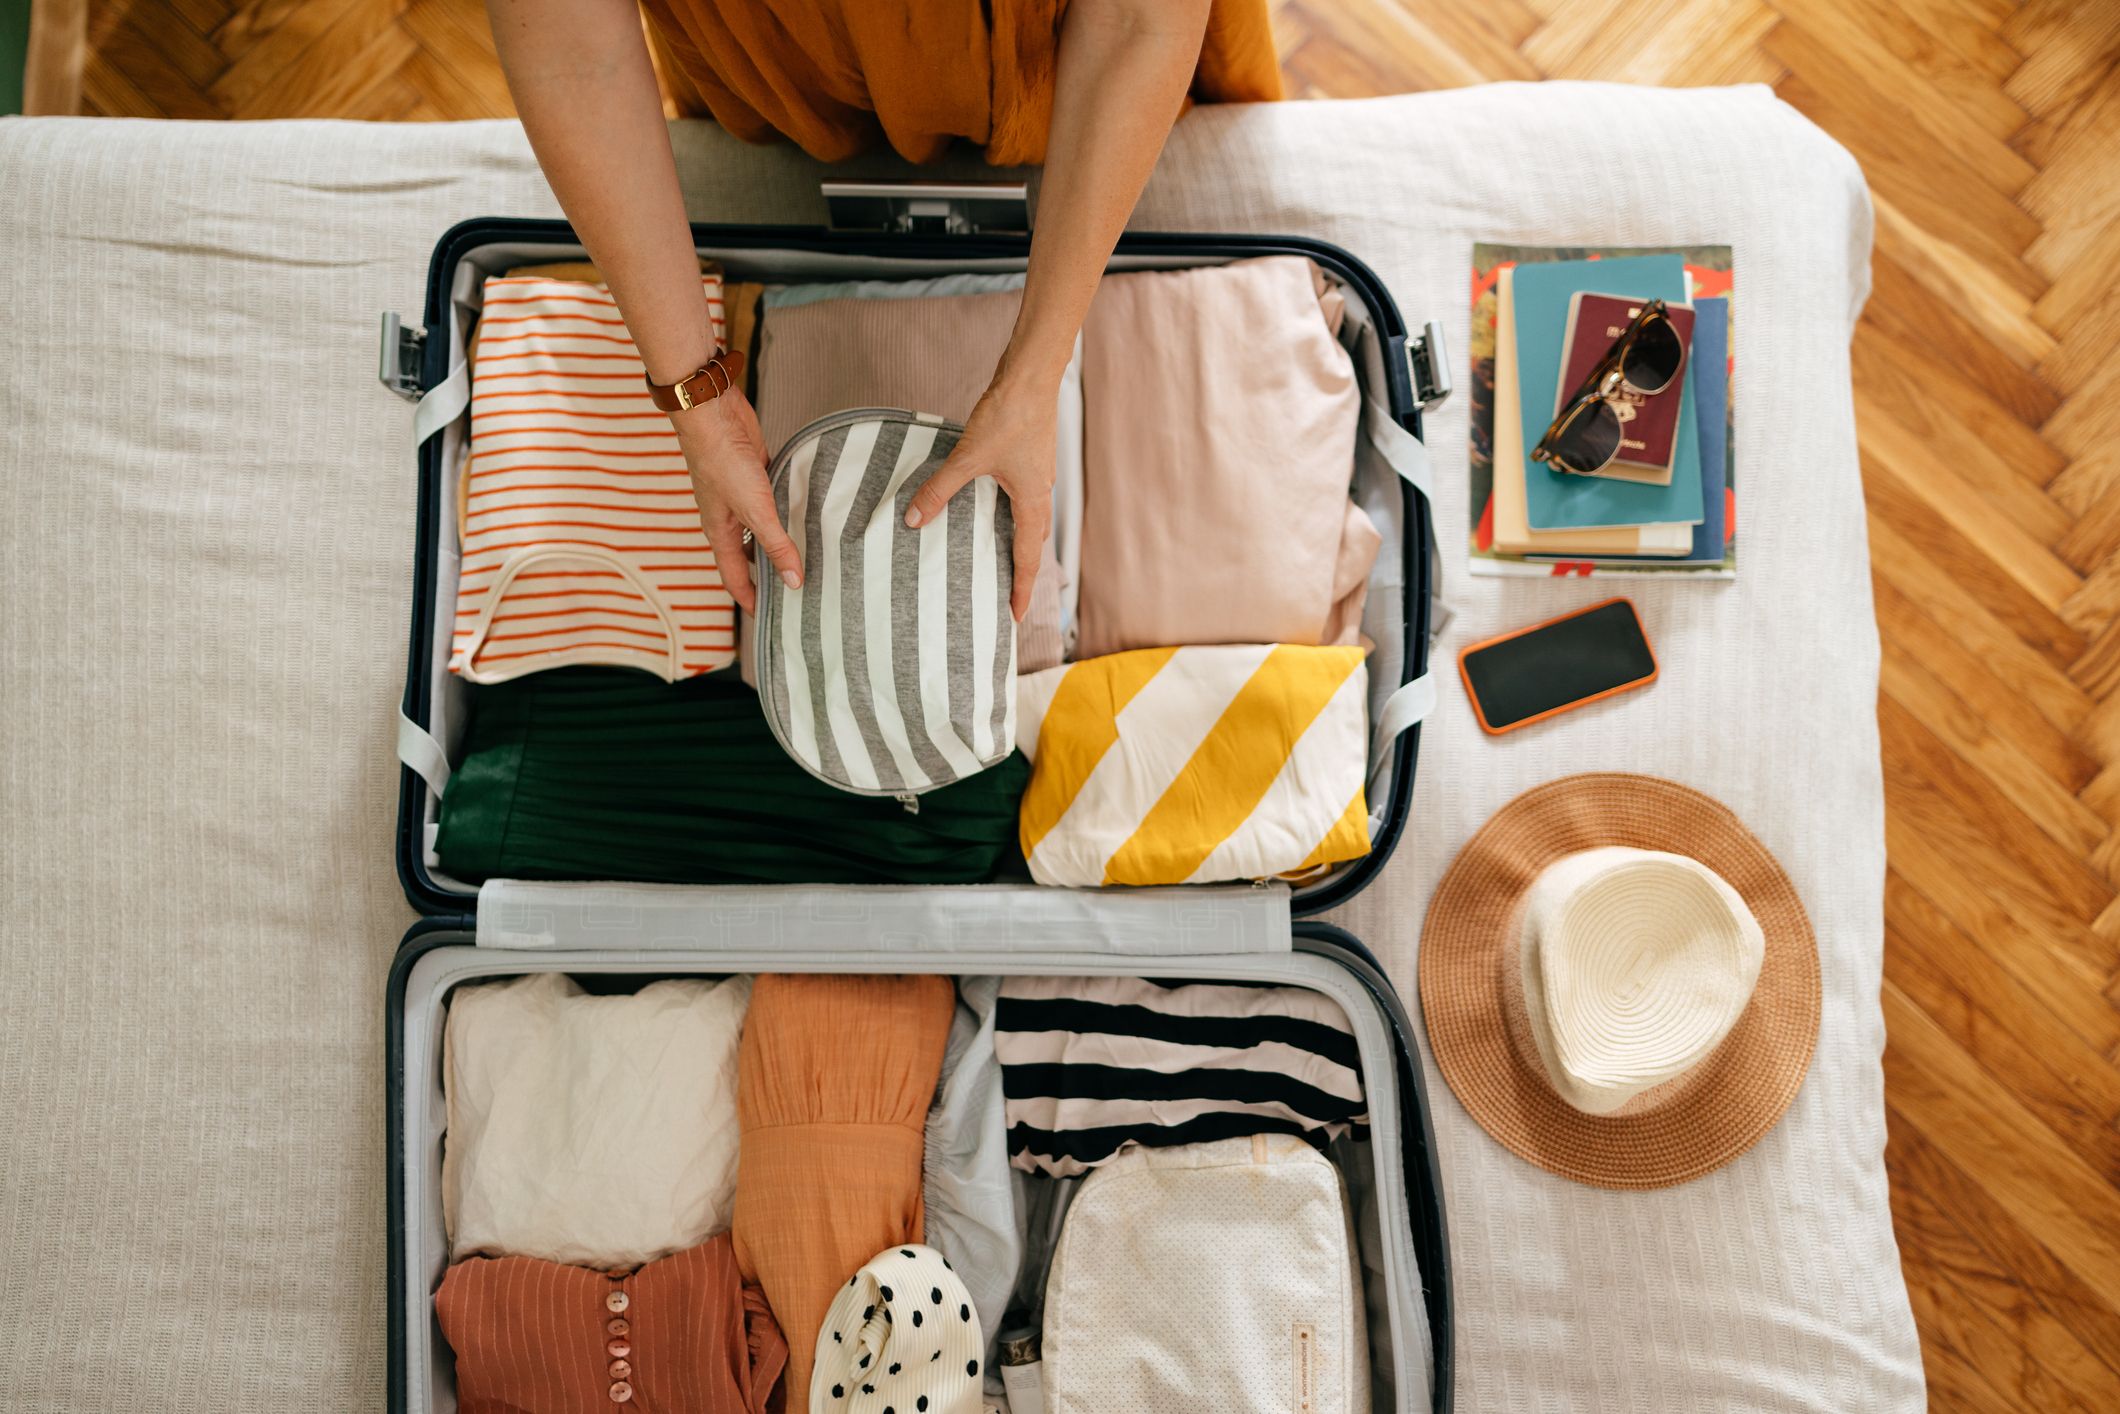 Tips to Using Travel Garment Bags & Avoiding Wrinkles